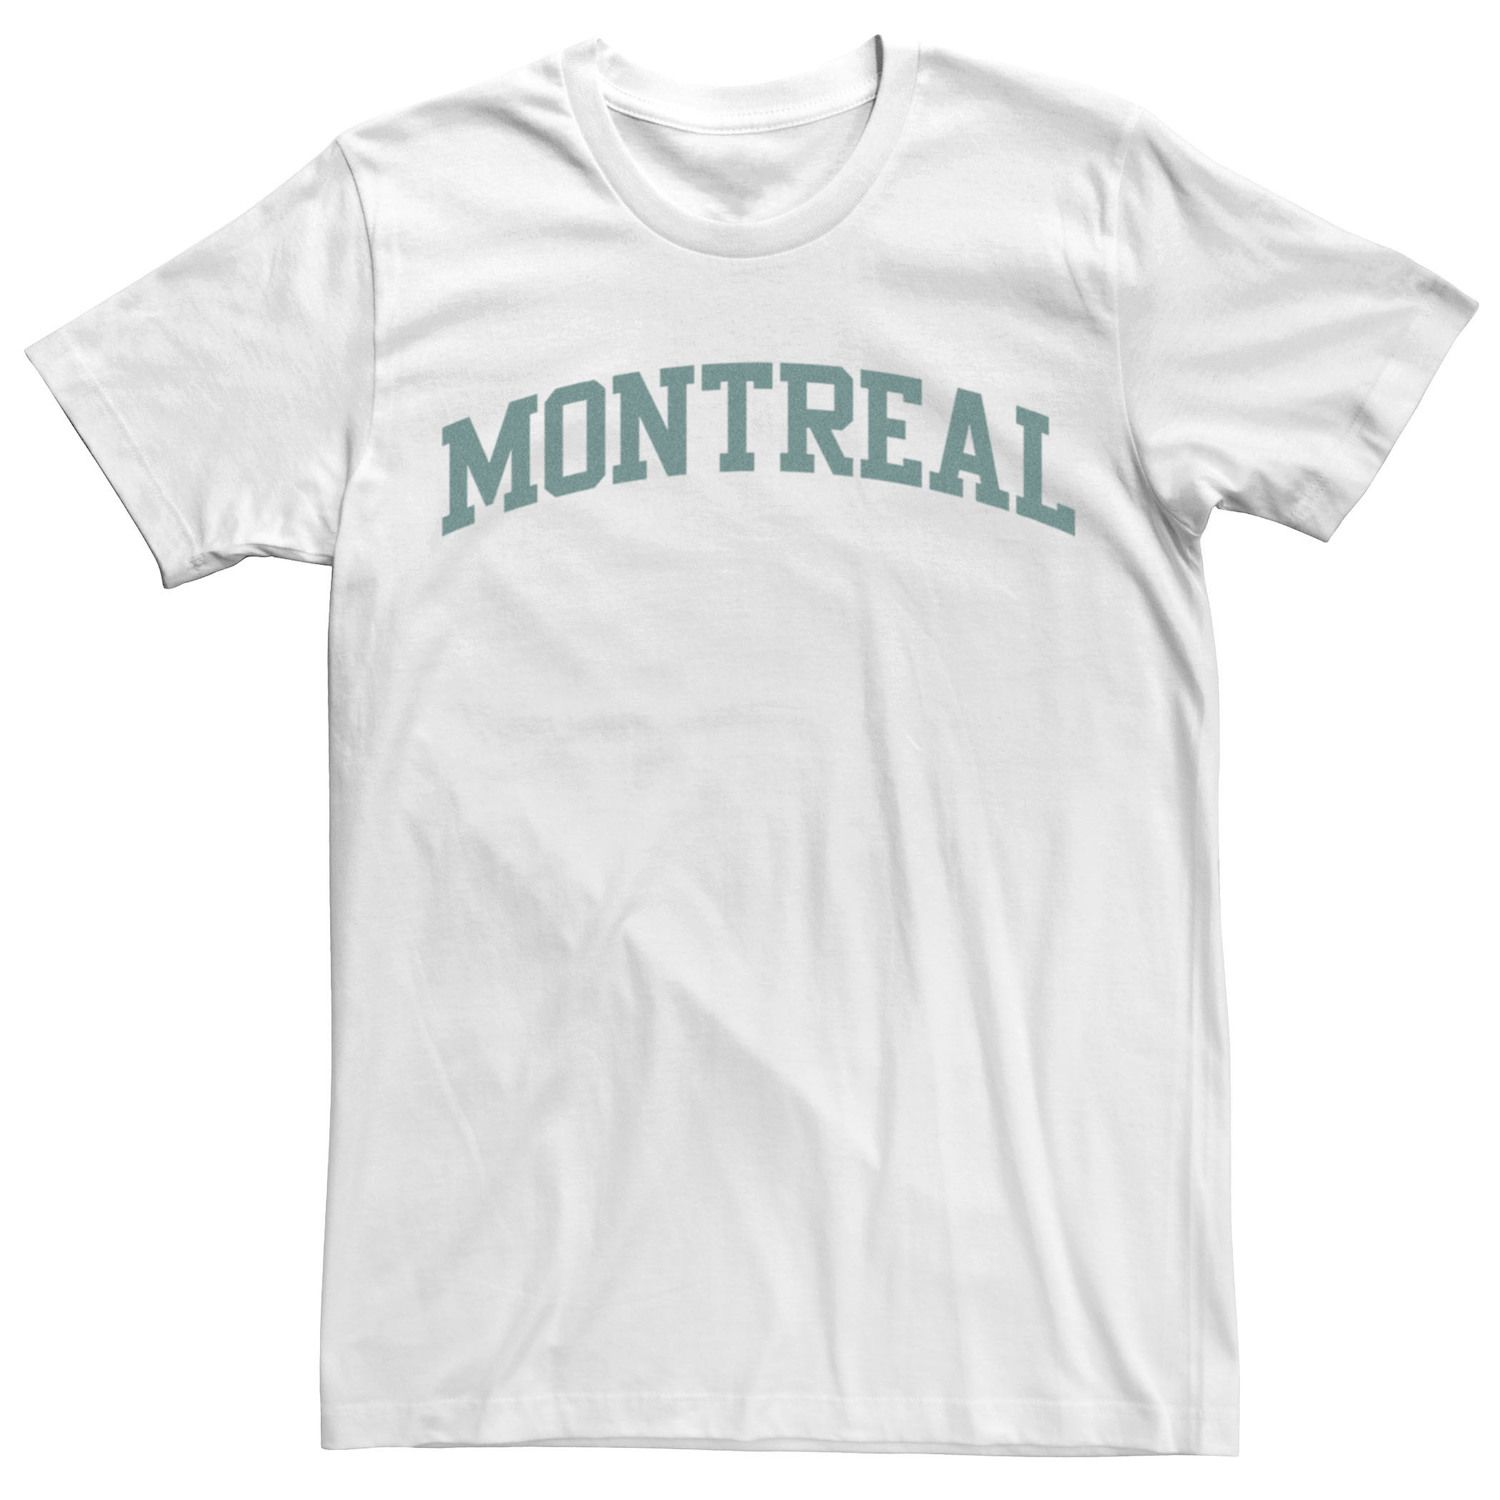 цена Мужская модная простая университетская футболка с надписью Montreal Licensed Character